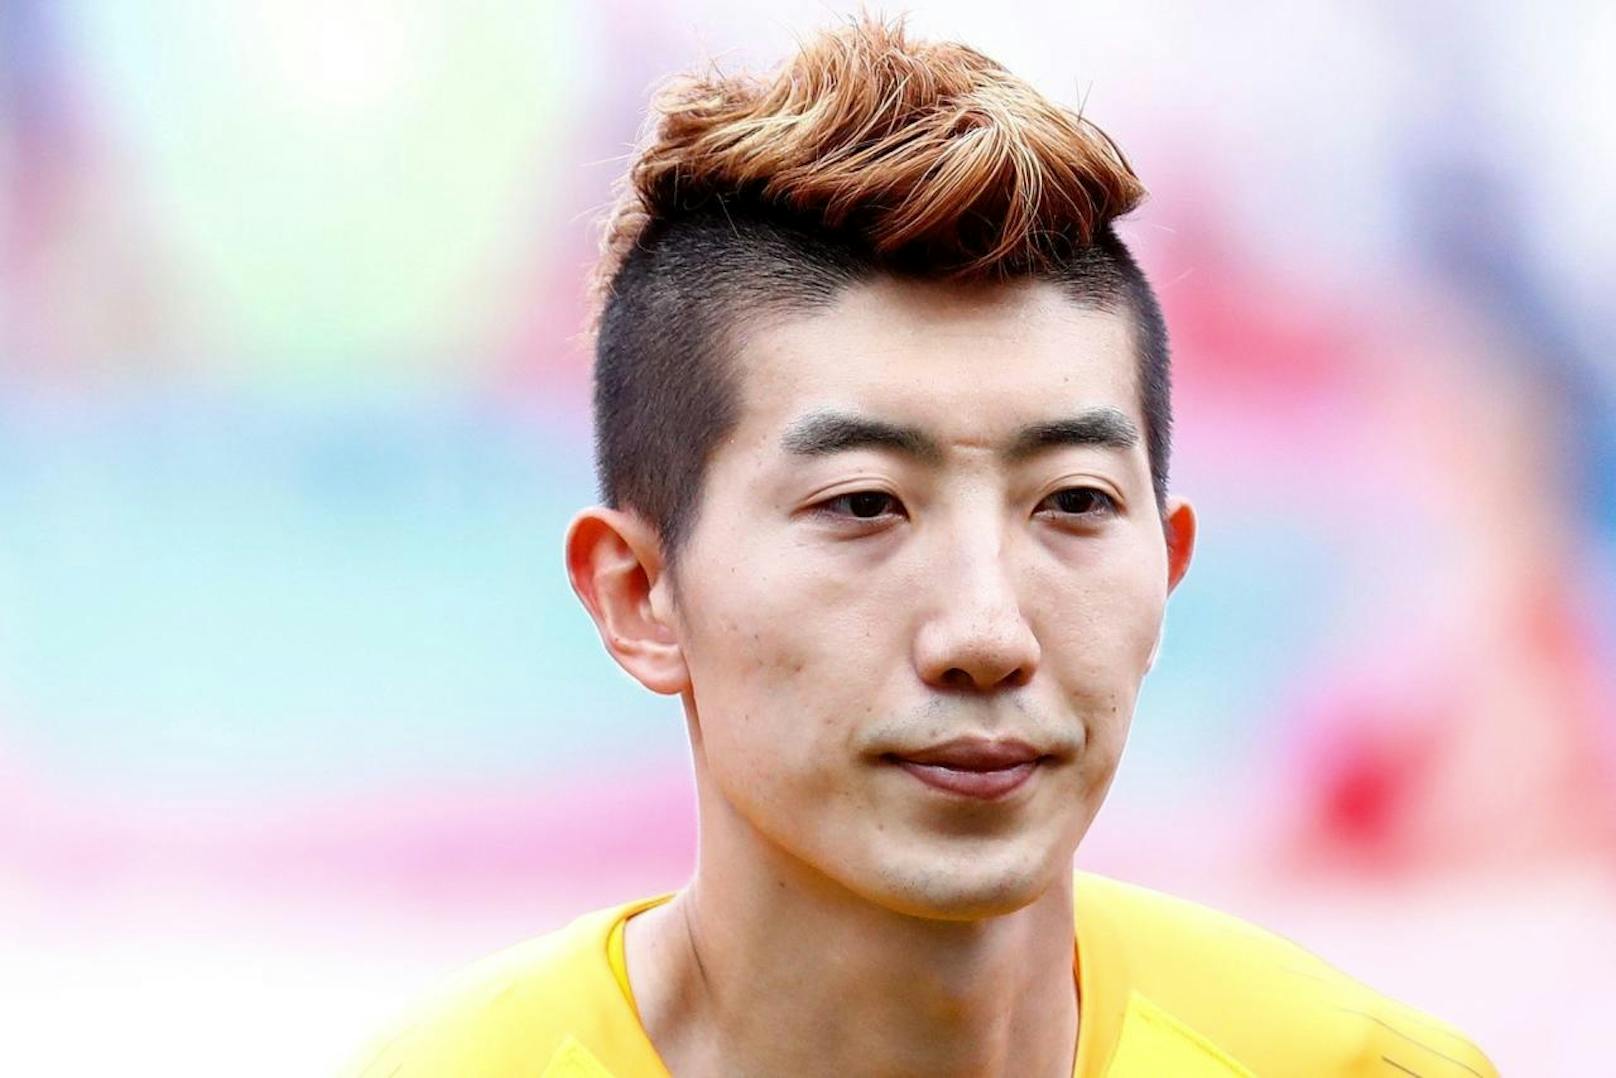 Südkoreas Torhüter Cho Hyun-woo war eine der Überraschungen dieser WM, und das nicht nur aufgrund seines rot-orangenen Irokesen.